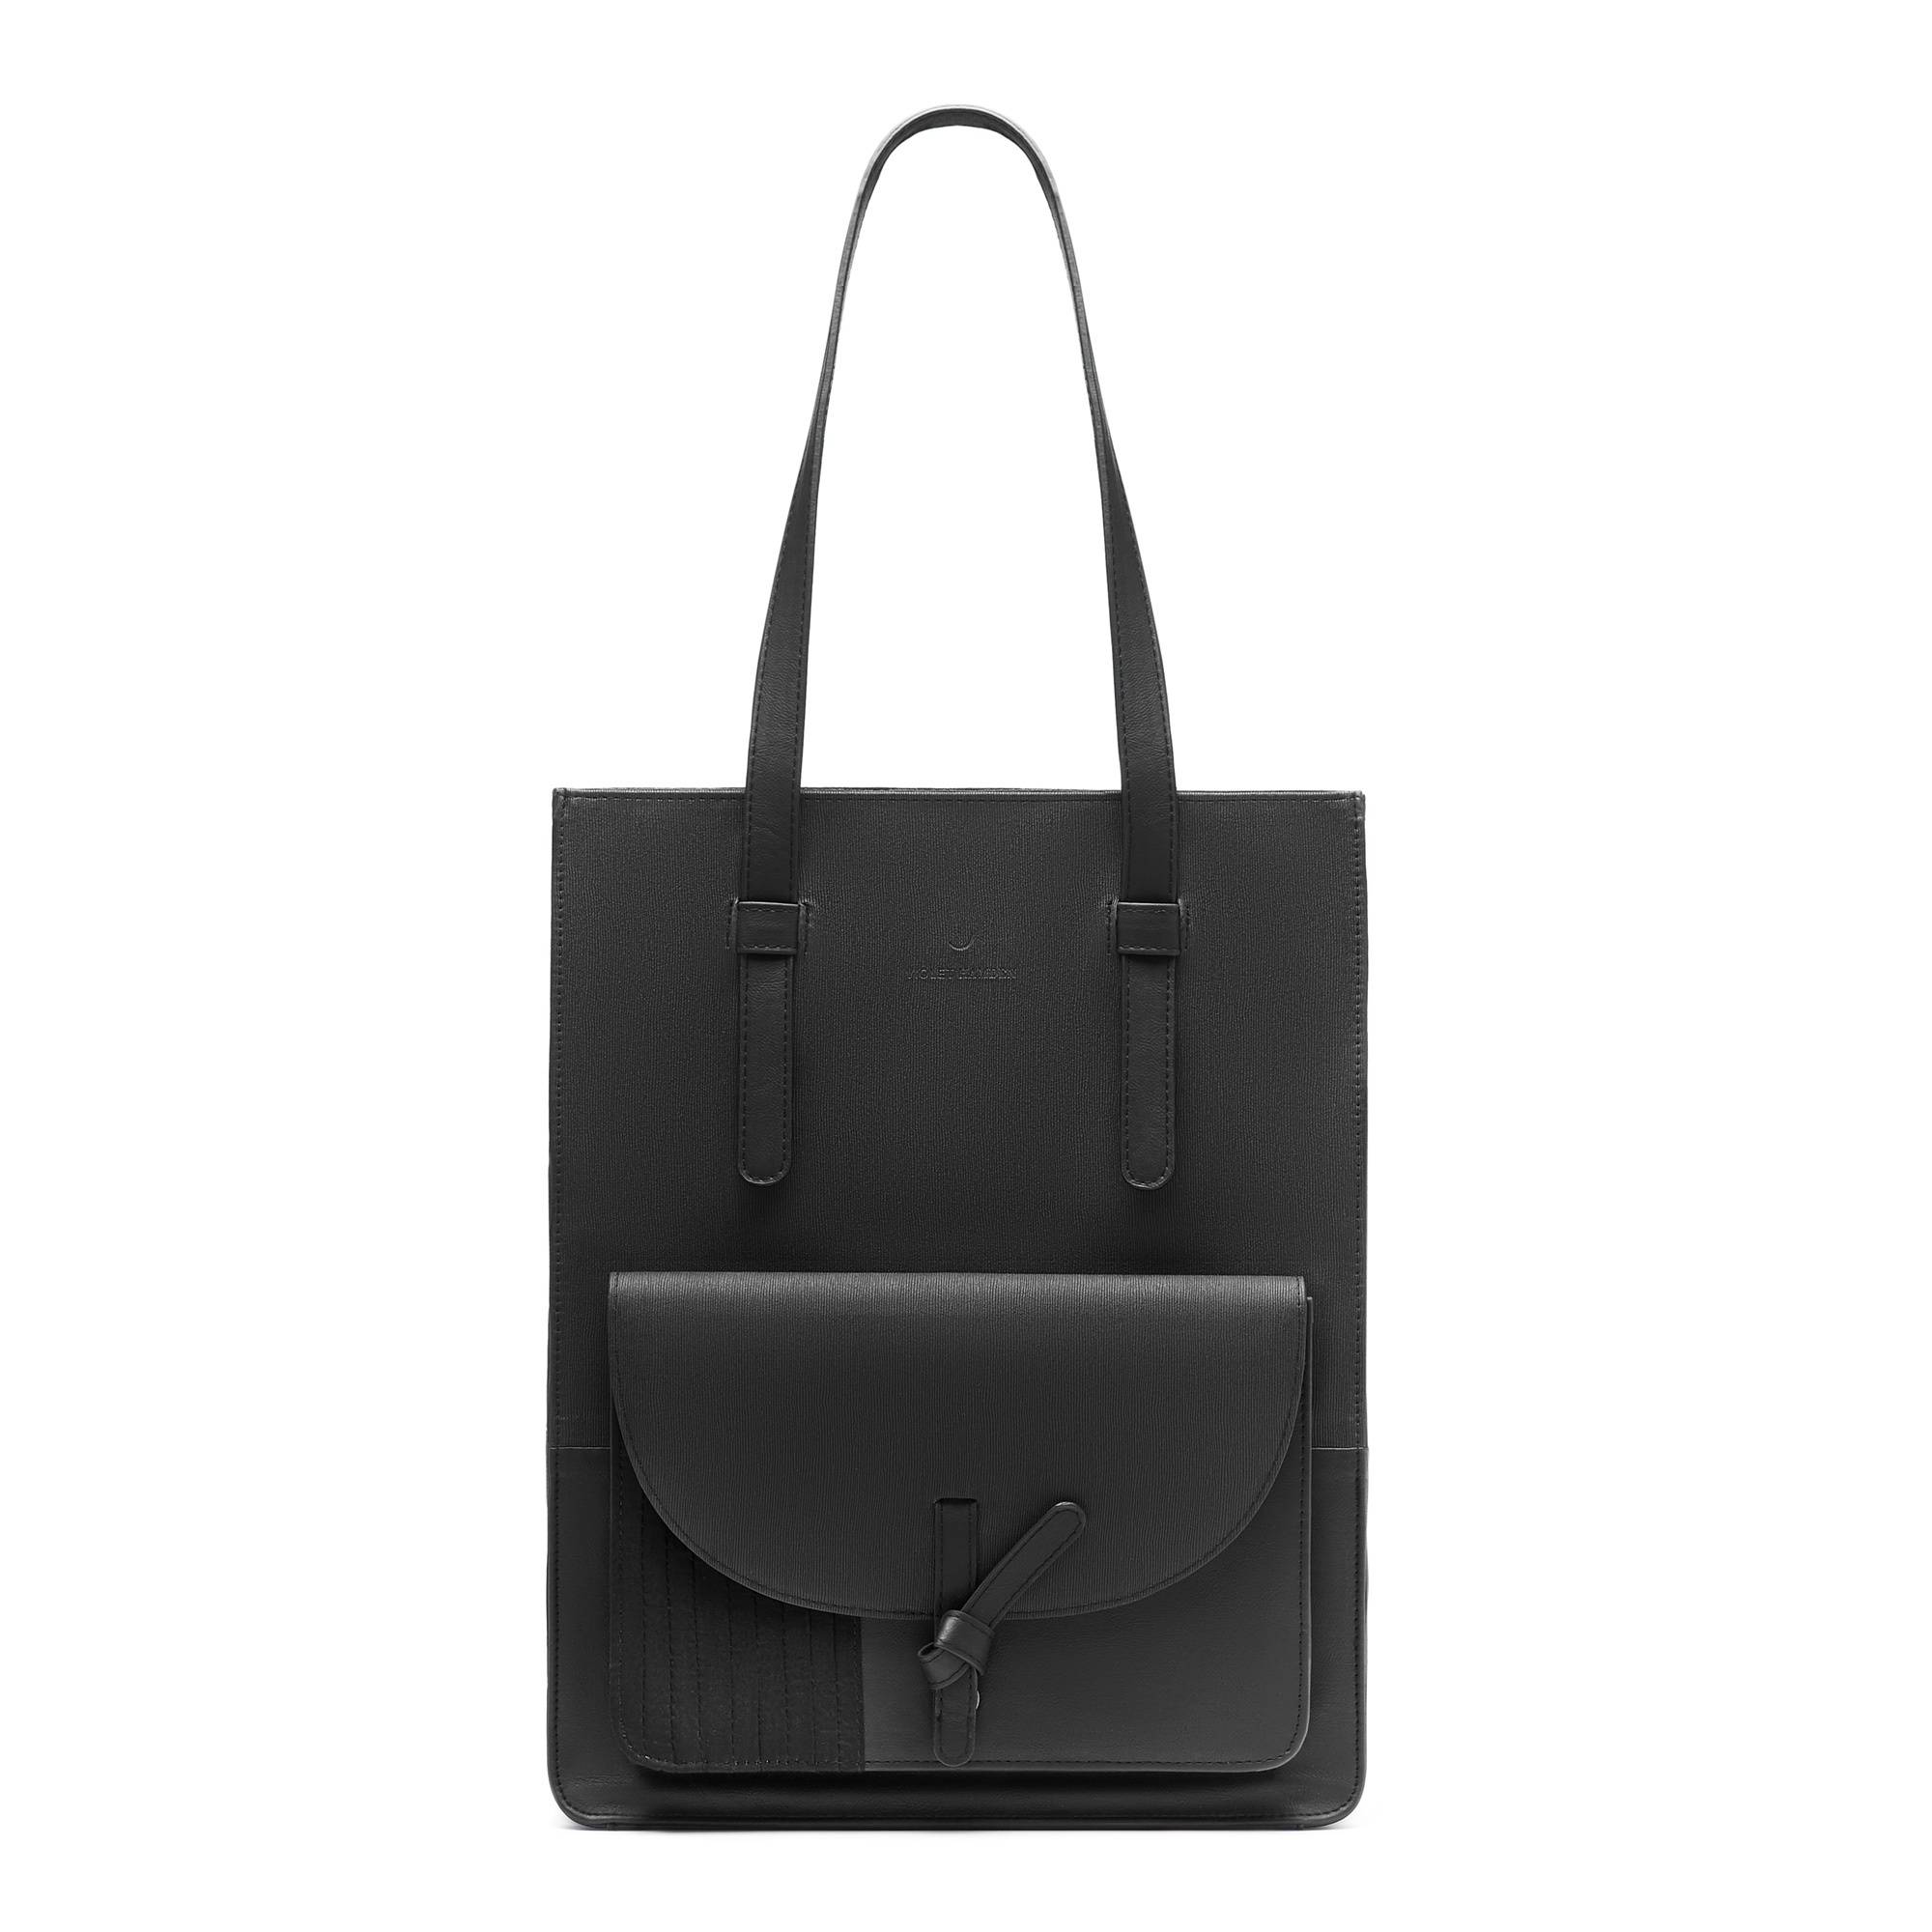 Essential Bag schwarze Einkaufstasche